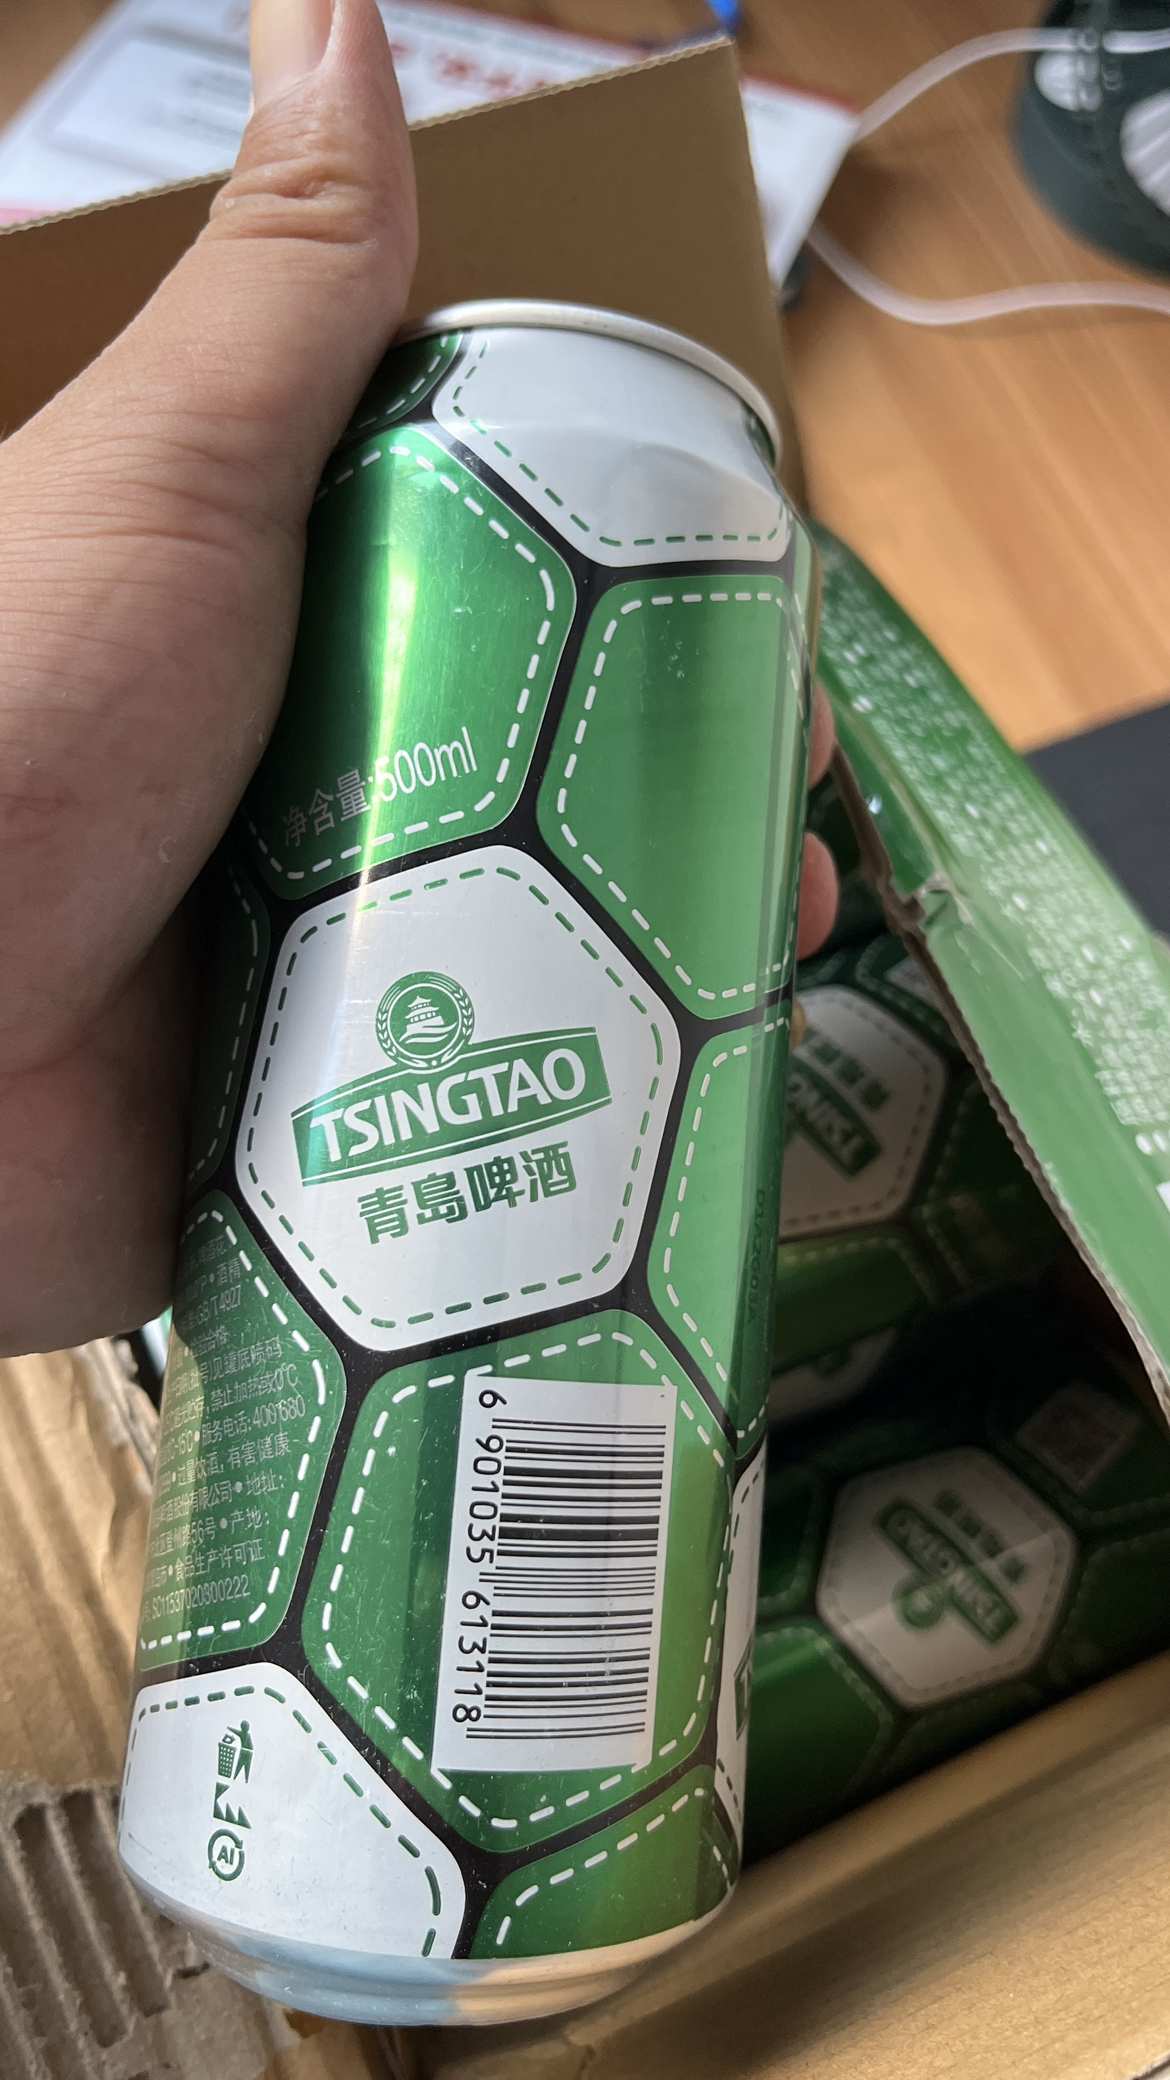 青岛啤酒(TSINGTAO)足球罐啤酒10度500ml*12罐 整箱装 官方直营晒单图